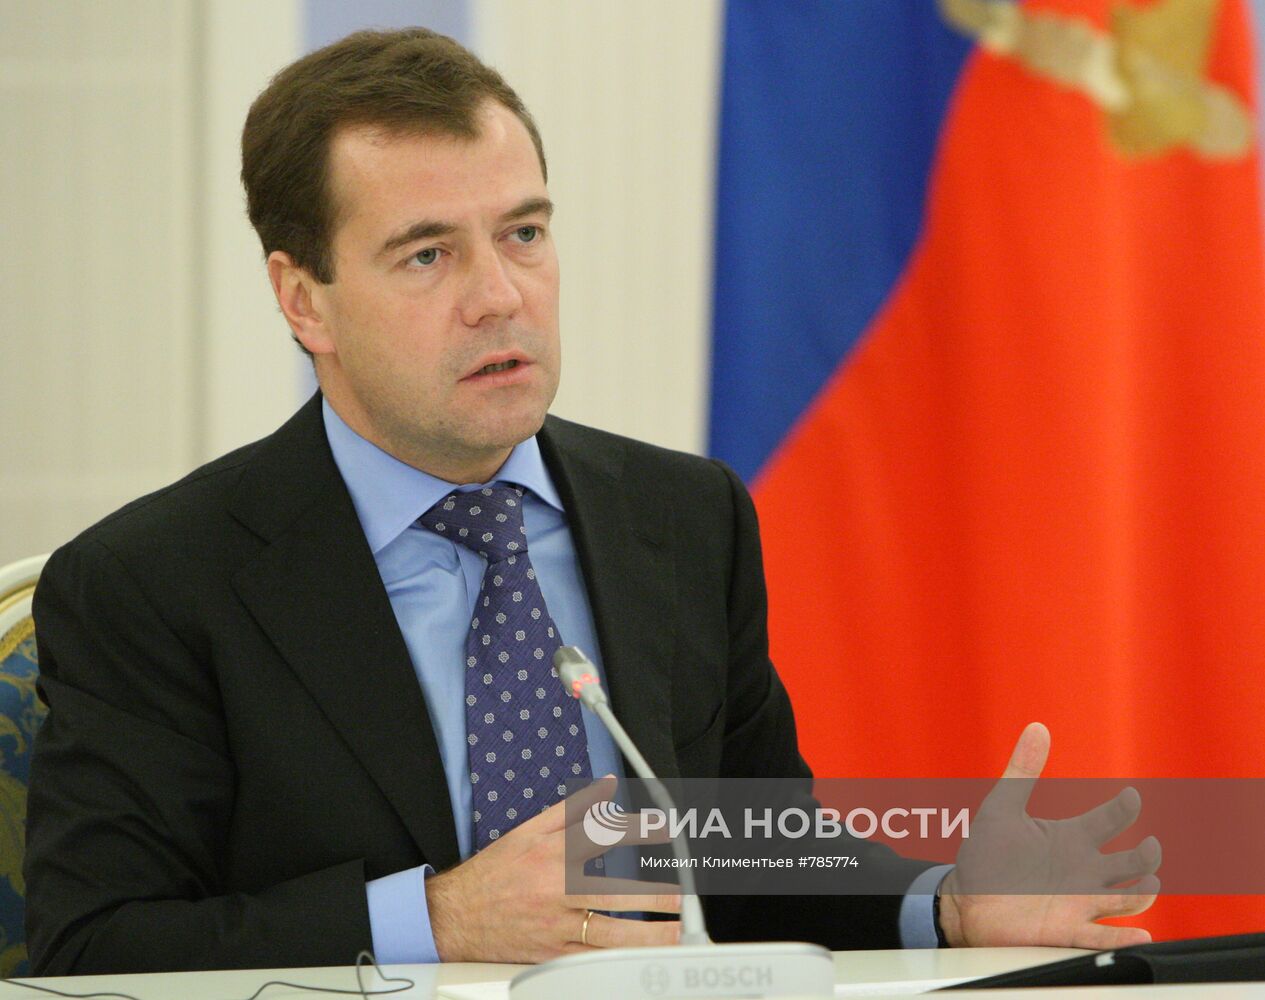 Д.Медведев встретился с участниками Мюнхенской конференции